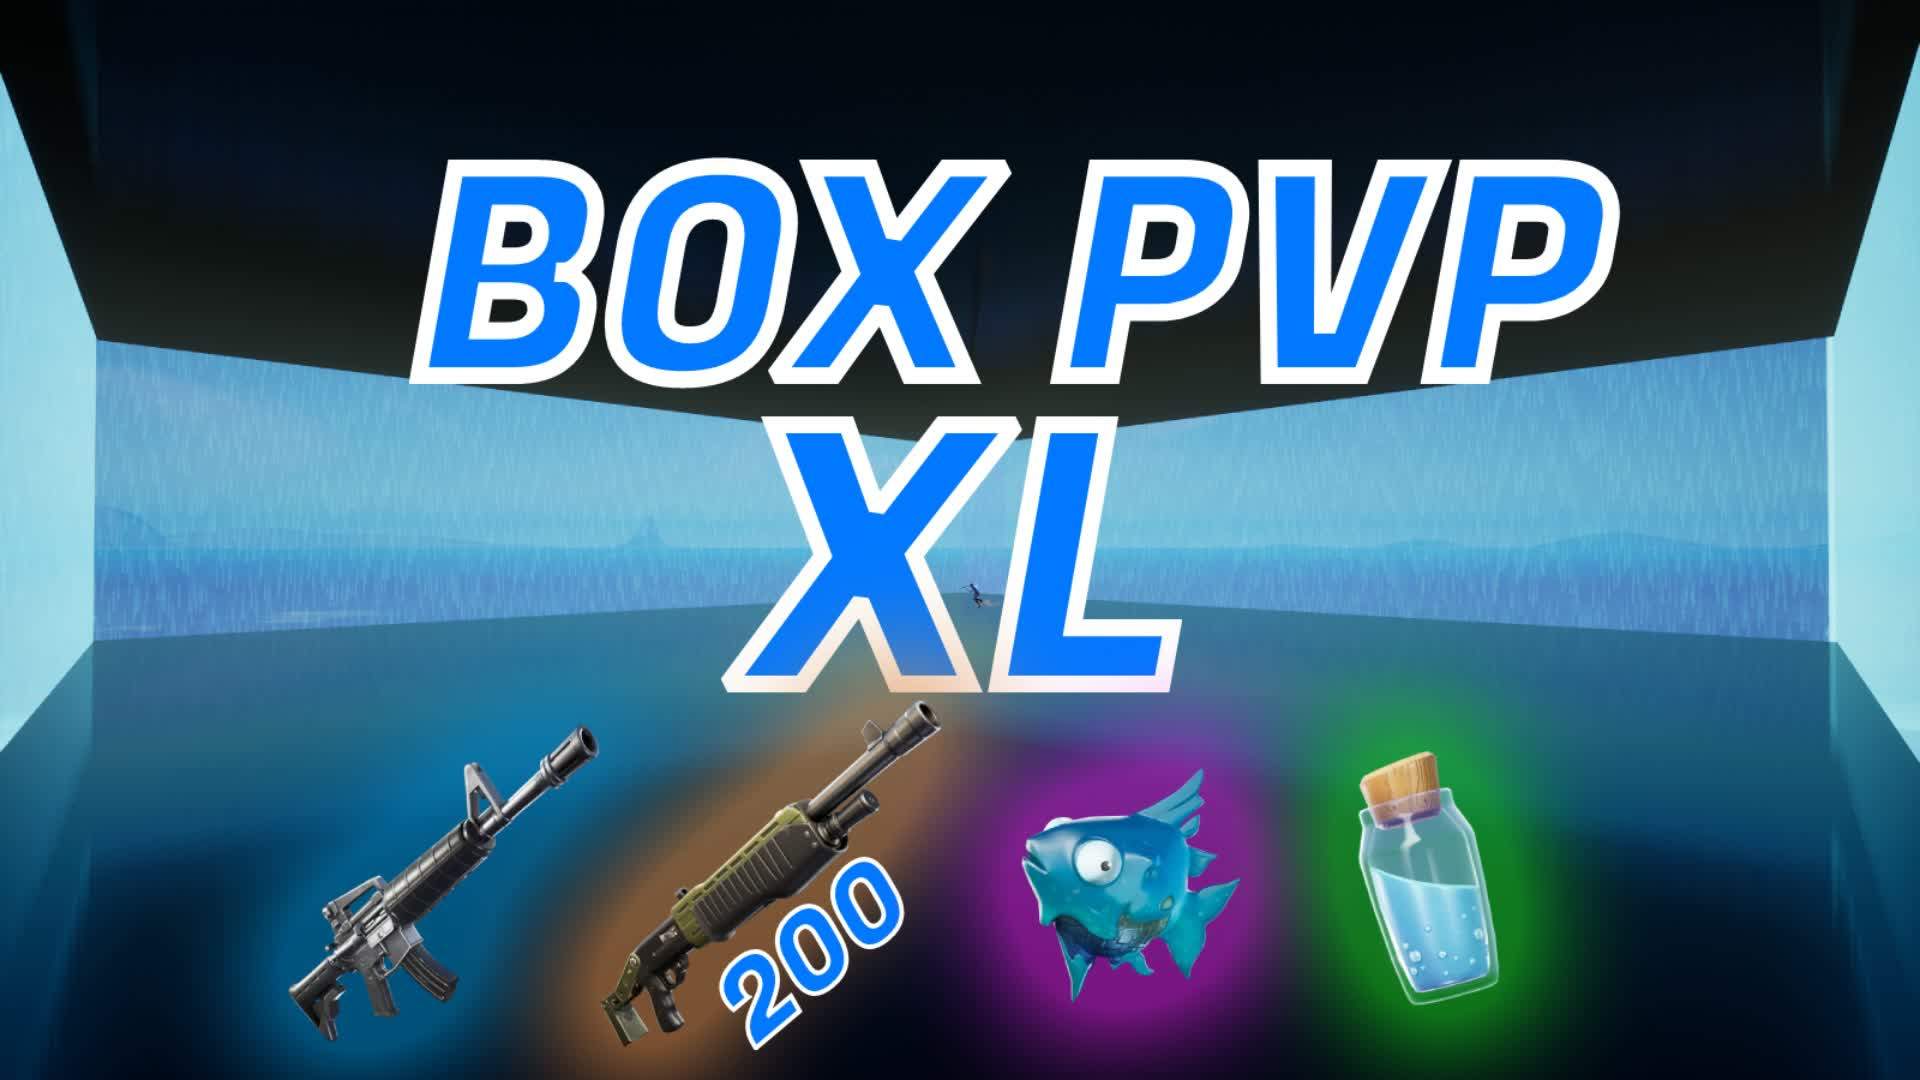 BOX PVP XL